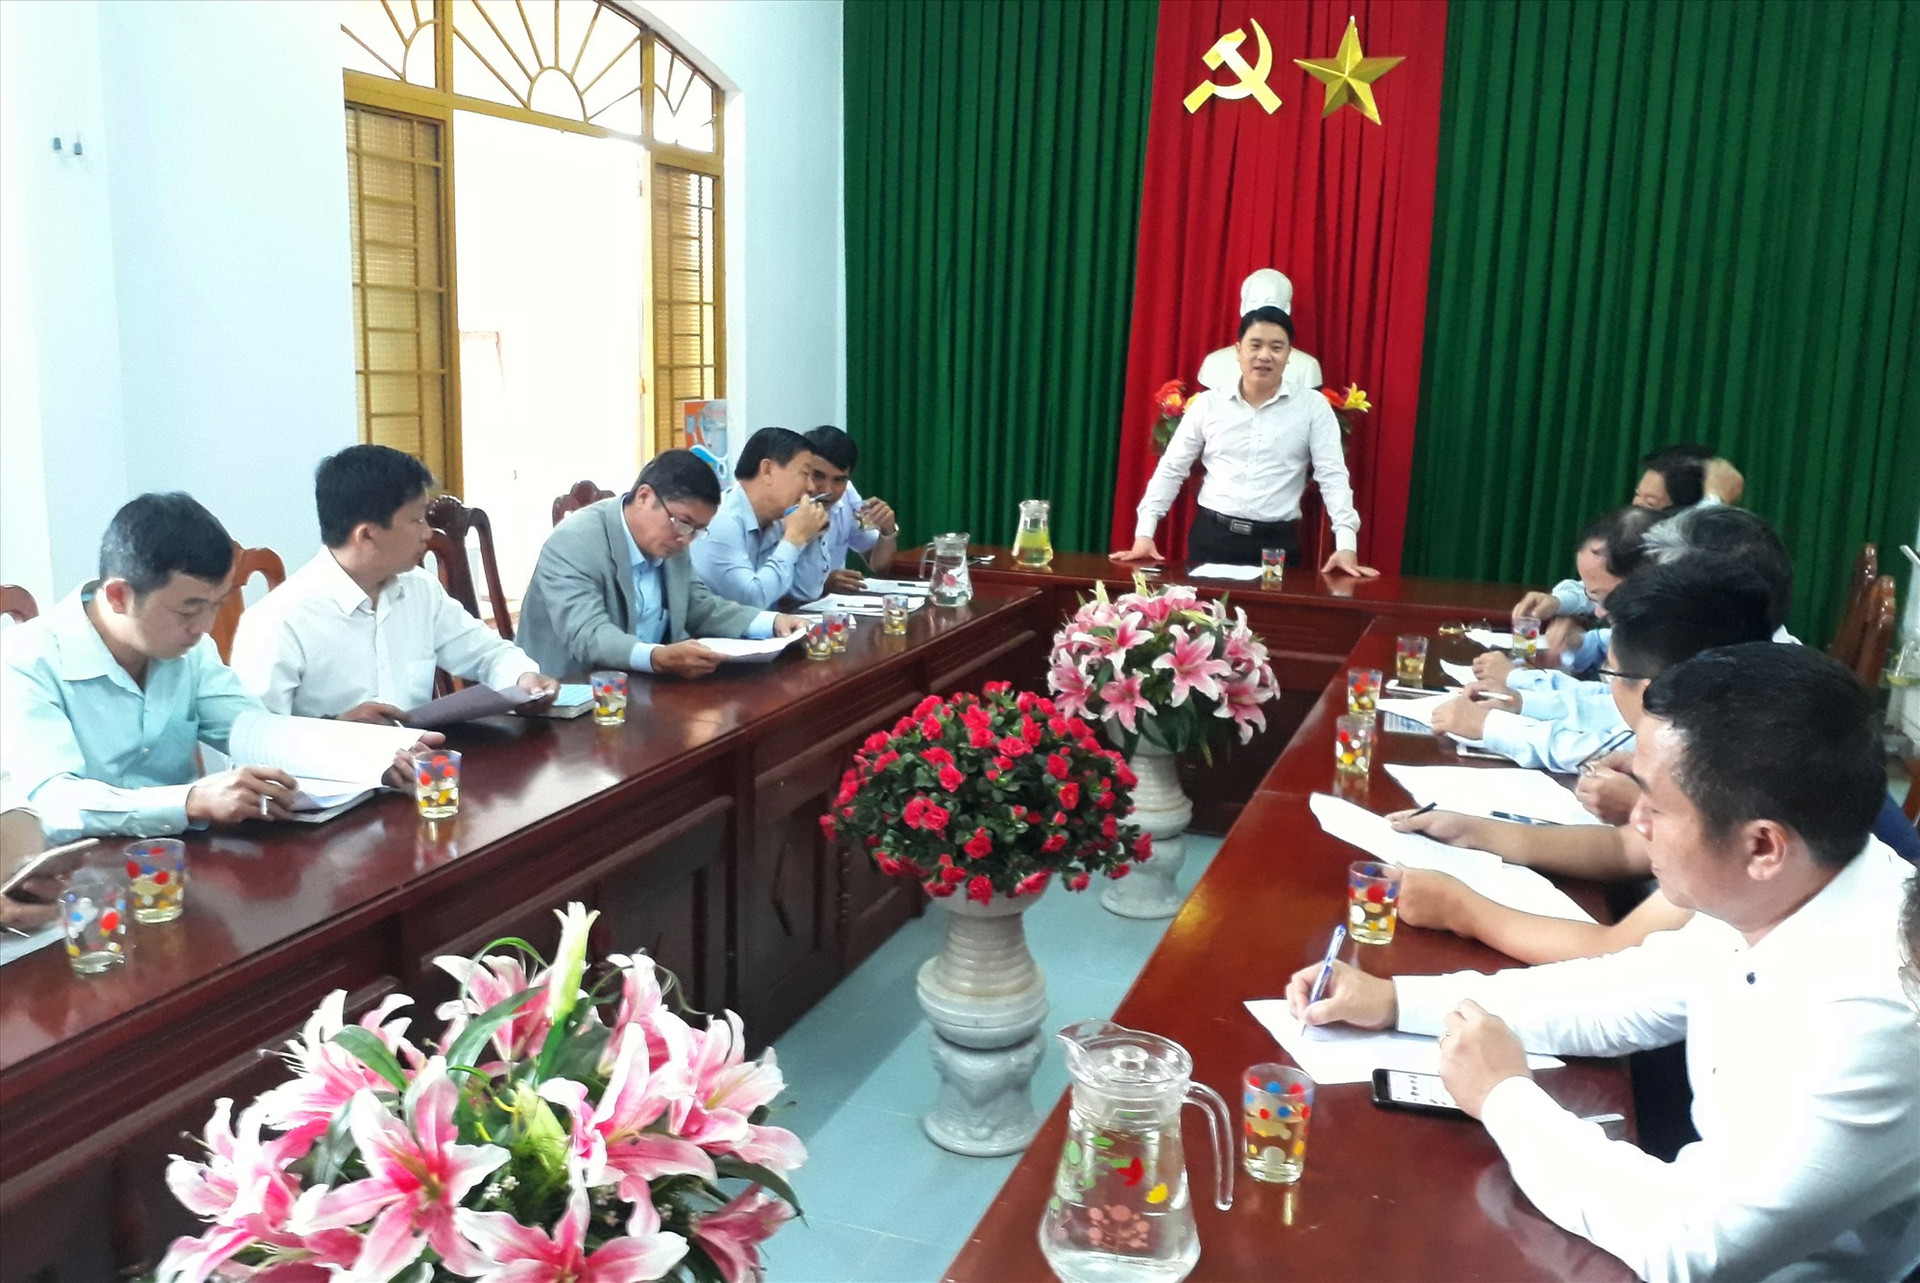 Lãnh đạo tỉnh làm việc với huyện Quế Sơn về công tác khắc phục hậu quả cơn bão số 9. ảnh DT